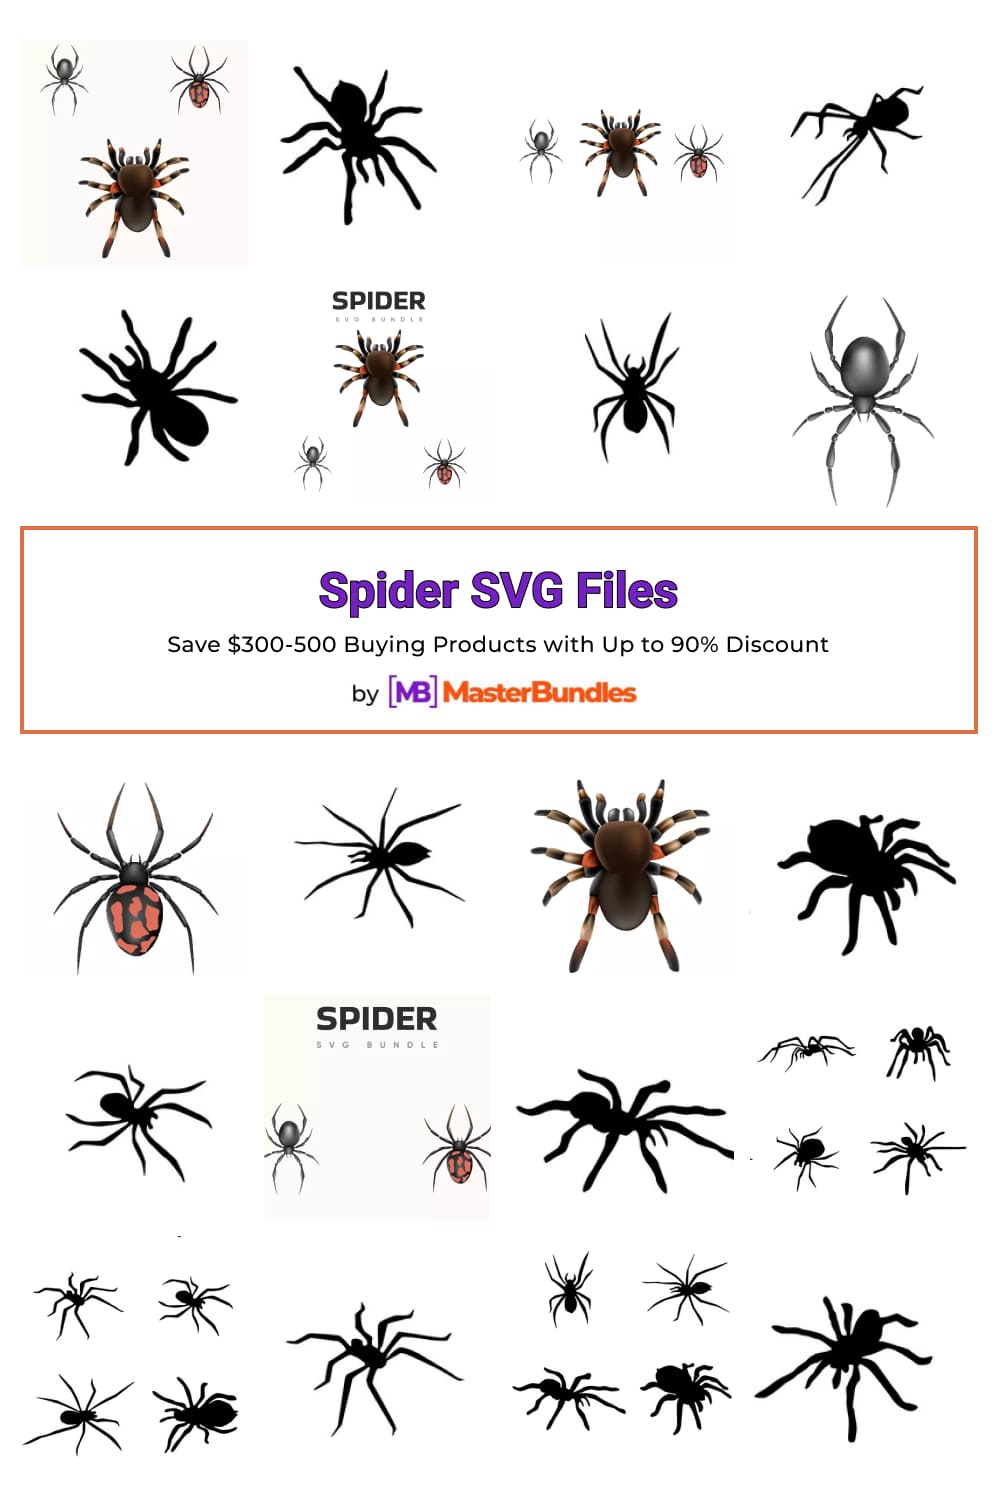 Spider SVG Files Pinterest image.